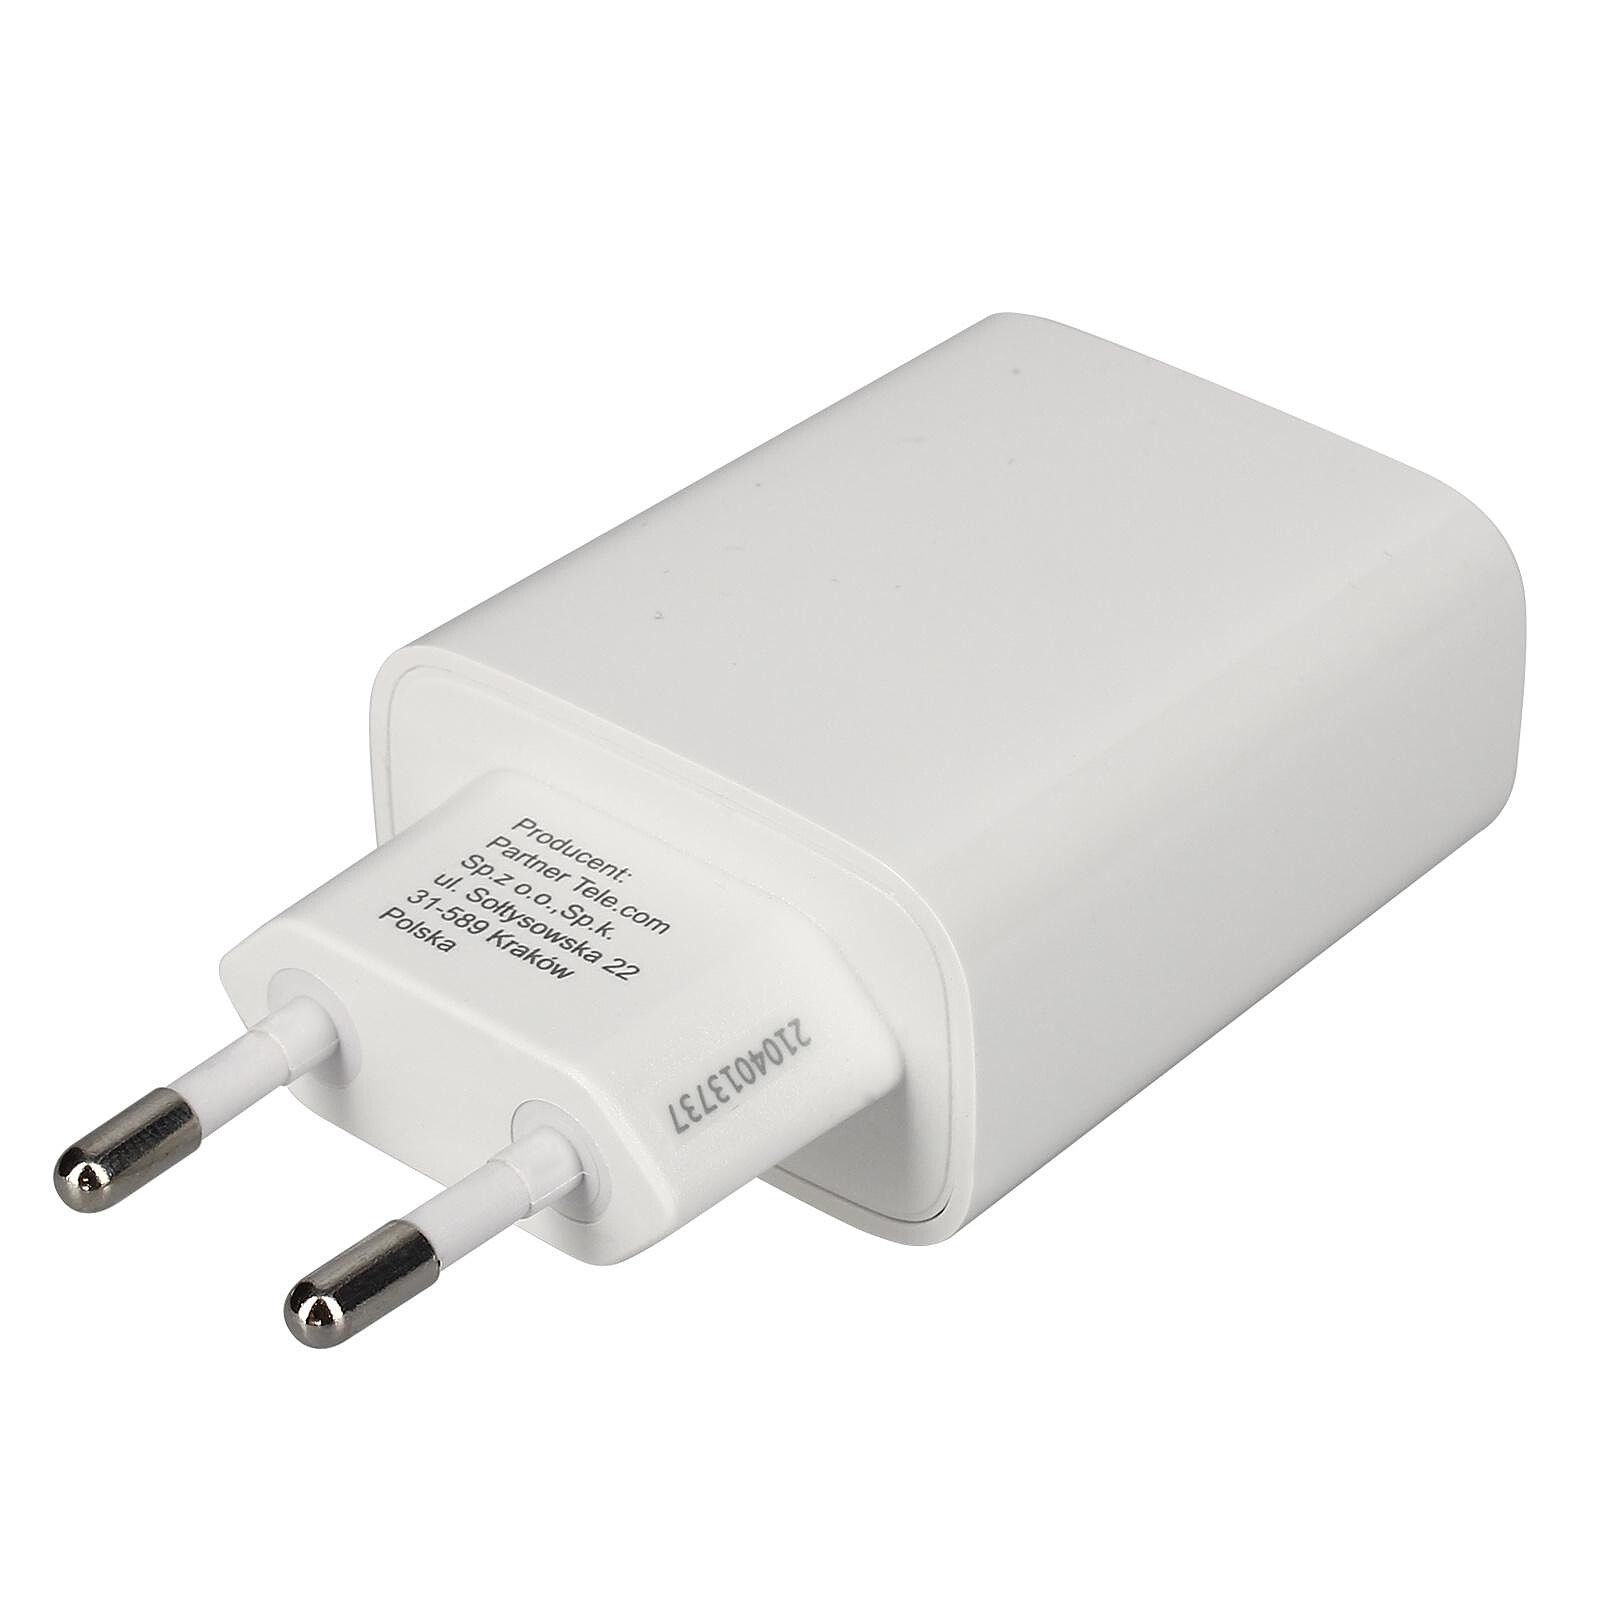 Adaptateur secteur USB-C compact avec fonction Power Delivery